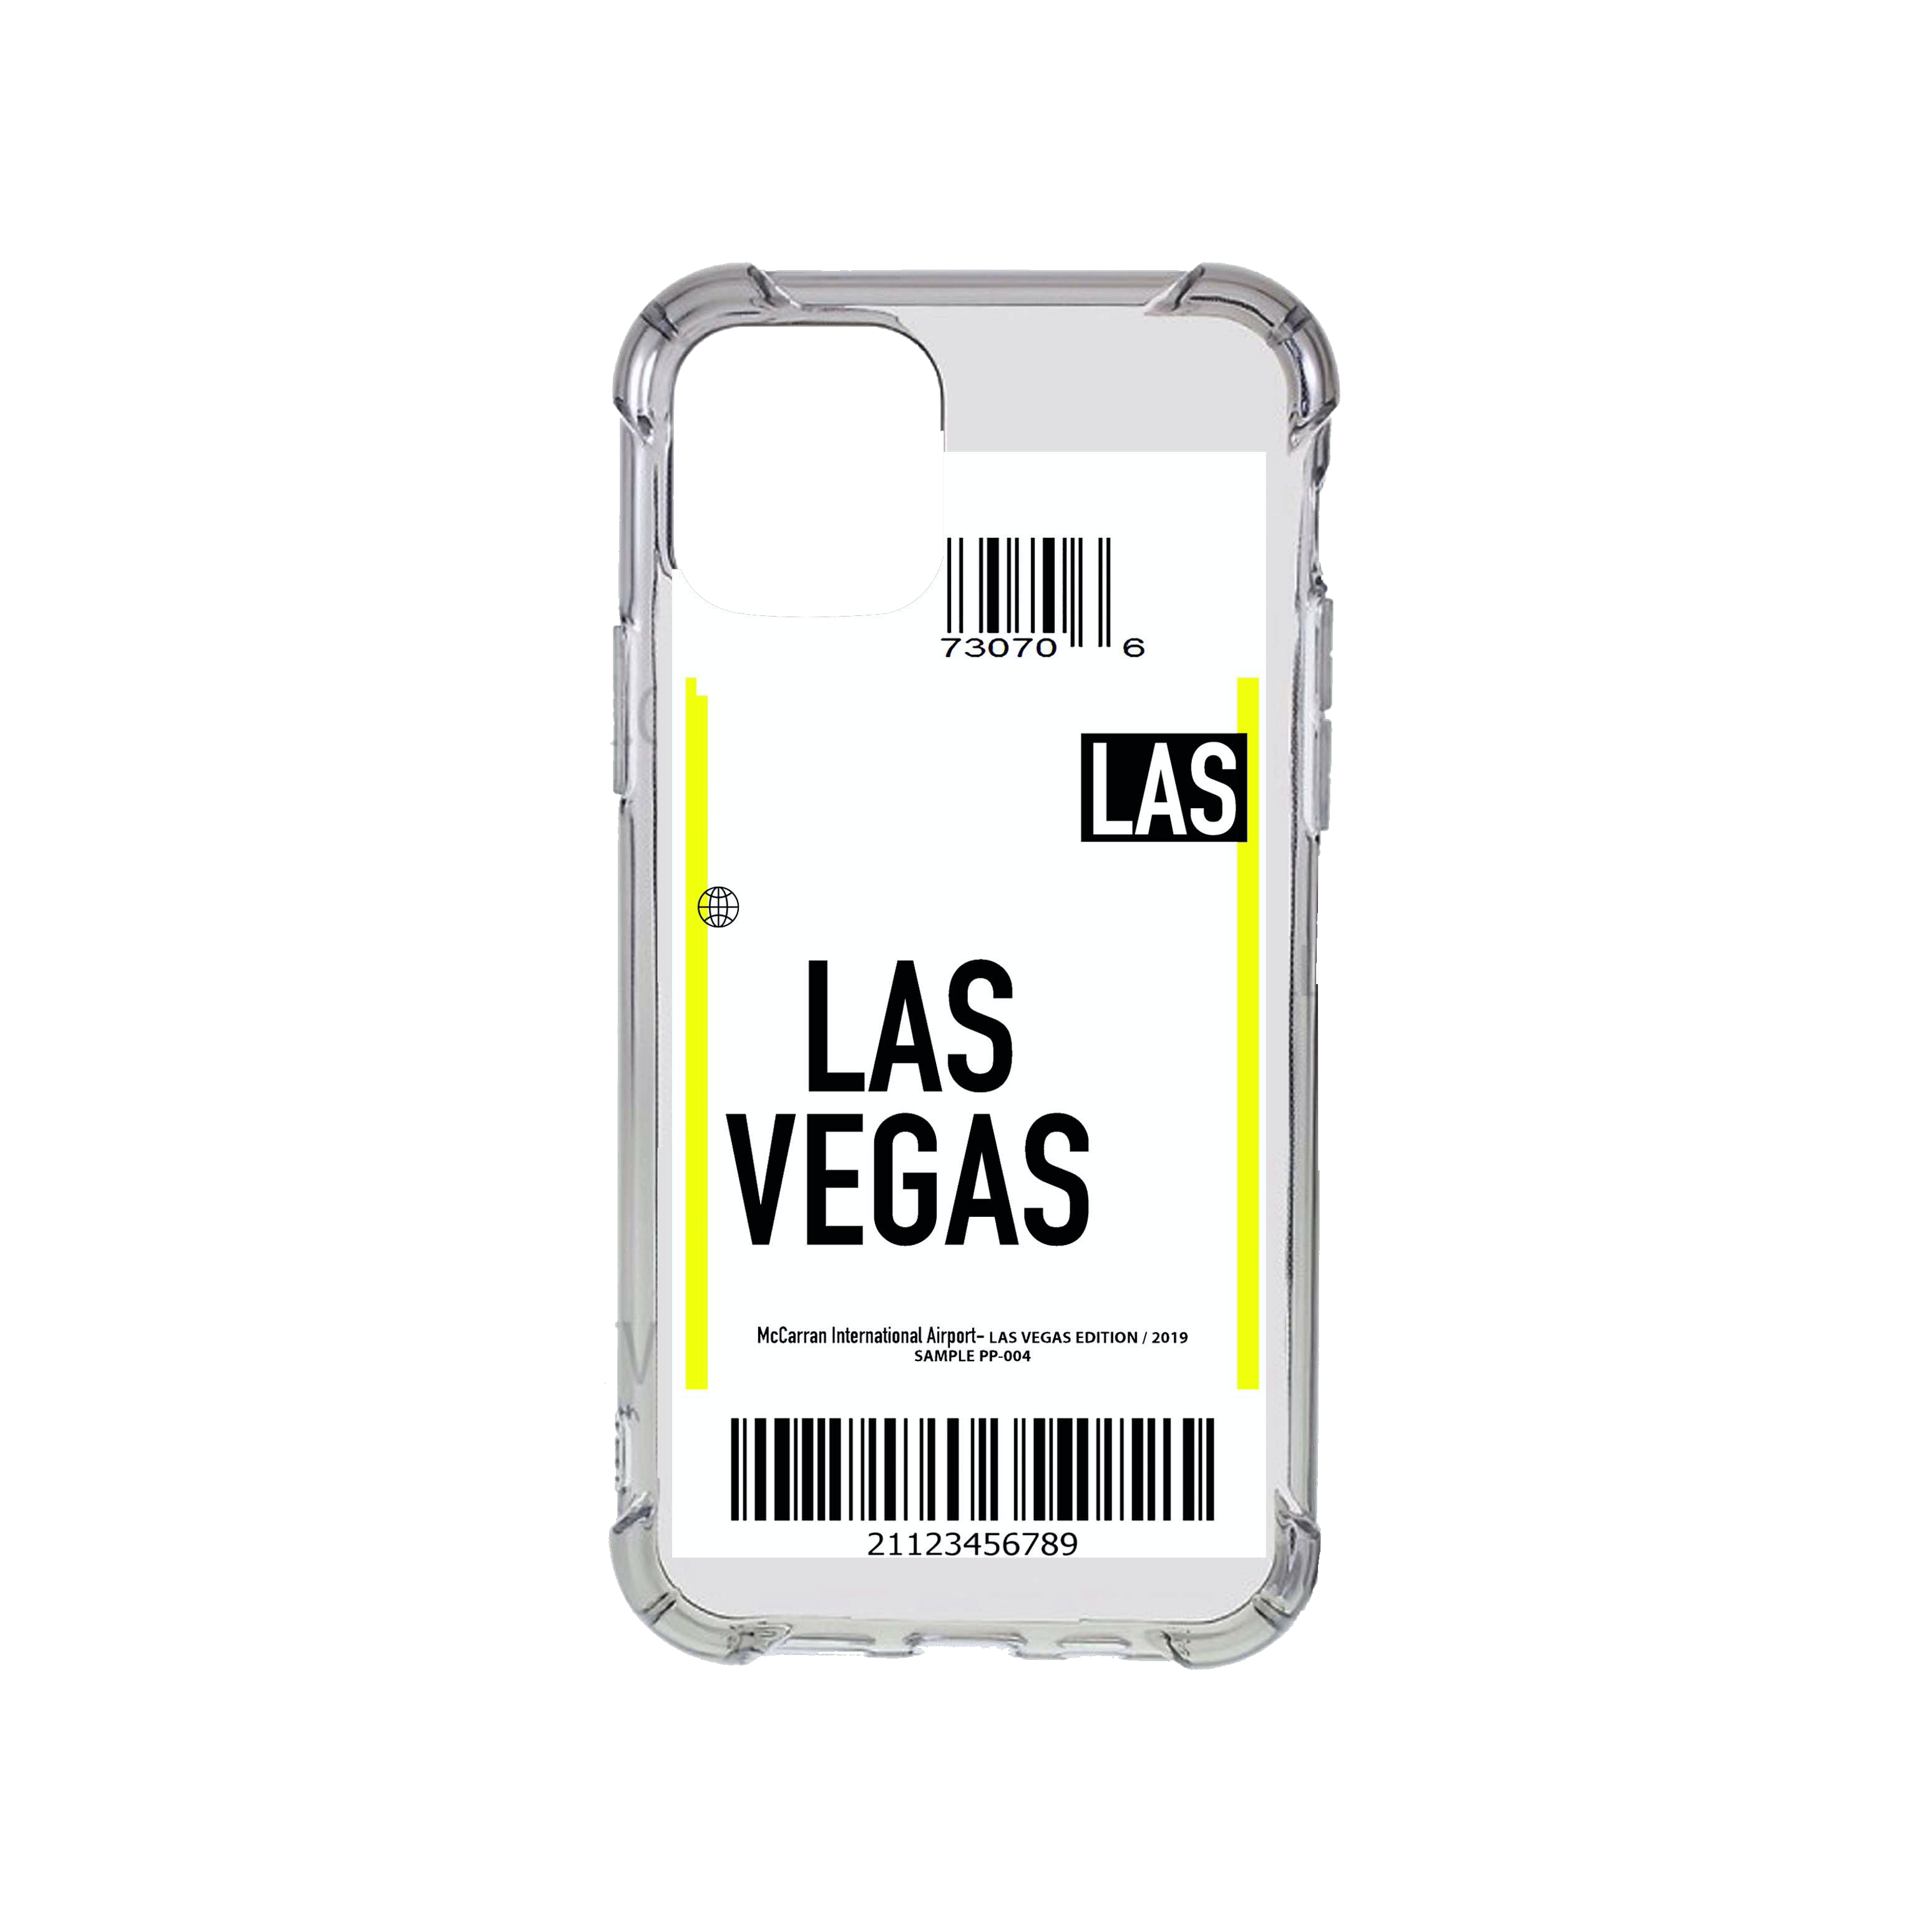 Las Vegas Flight Ticket